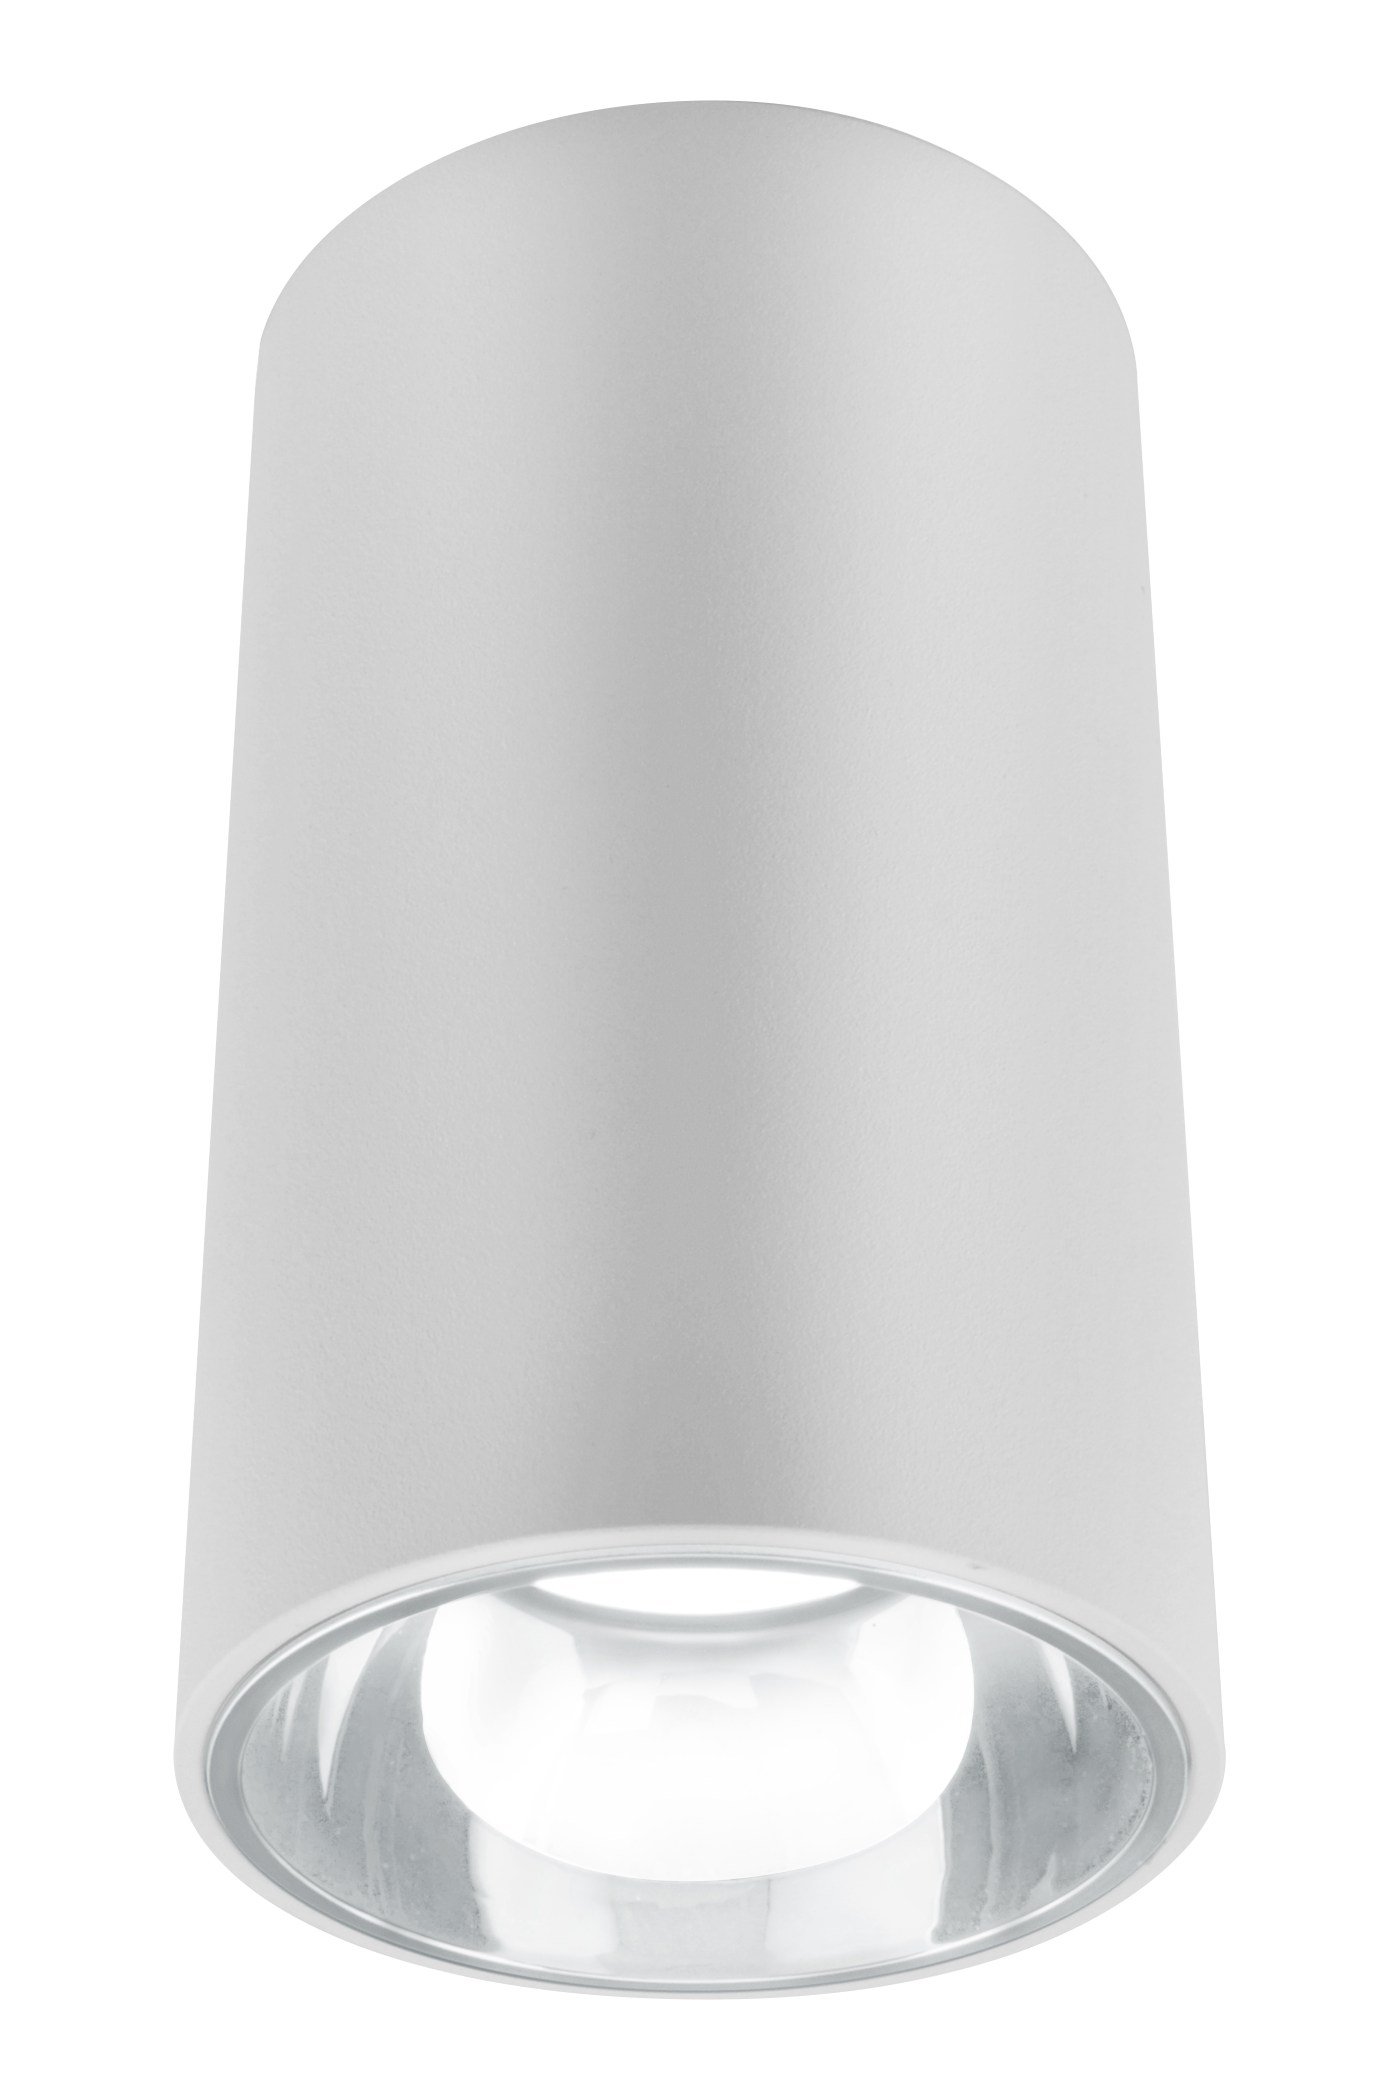   
                        Точковий світильник BLITZ (Німеччина) 29261    
                         у стилі хай-тек.  
                                                Форма: коло.                                                                          фото 1